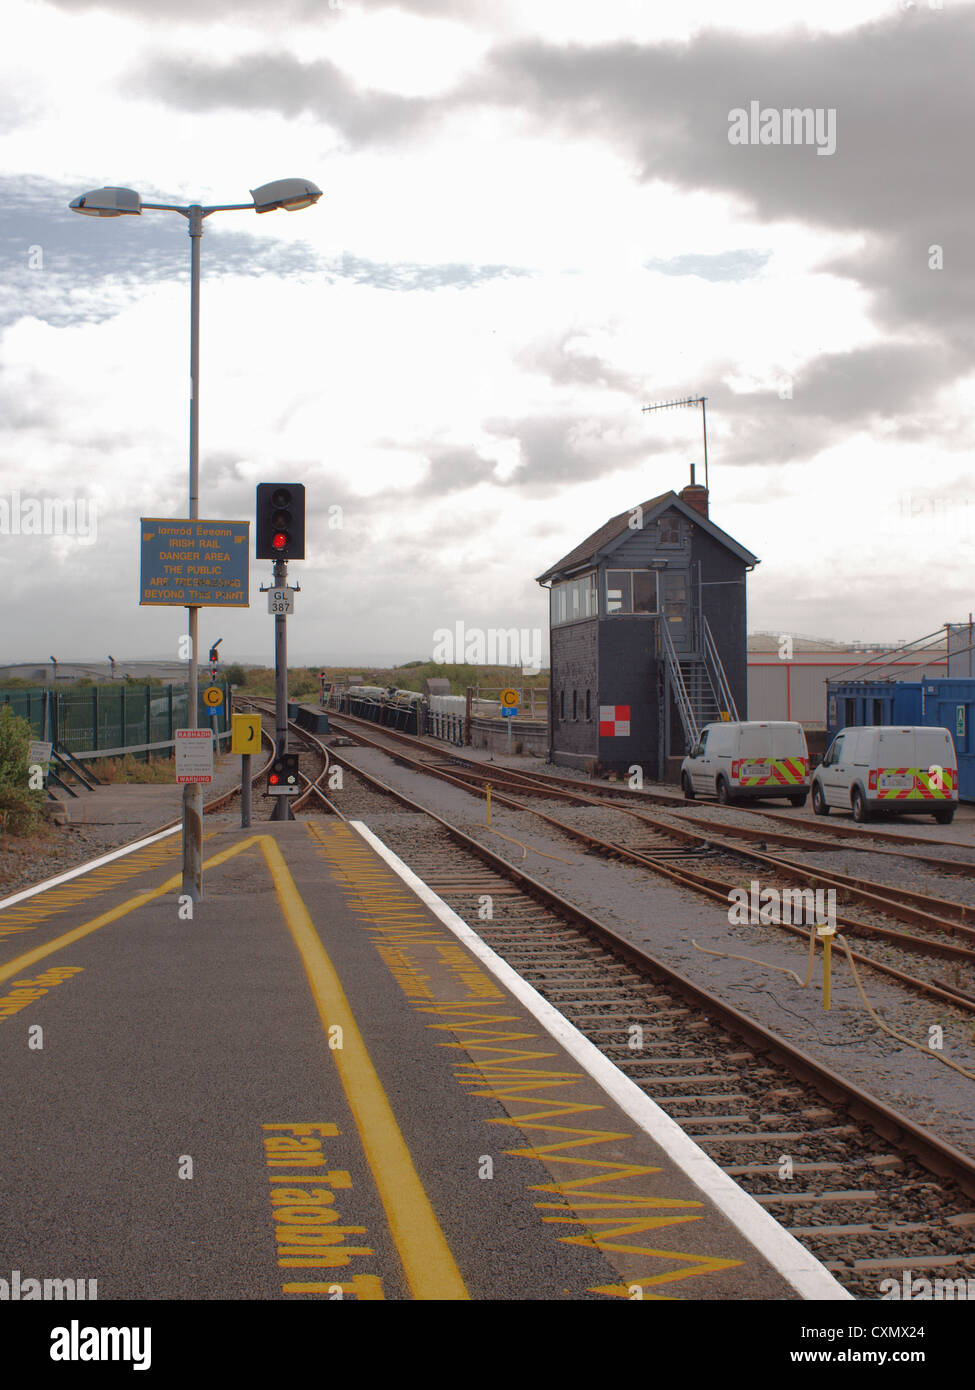 (Larnrod Eireann) Irische Schienen Spur und Signal Haus Feld am Bahnhof Galway im Westen Irlands. Stockfoto